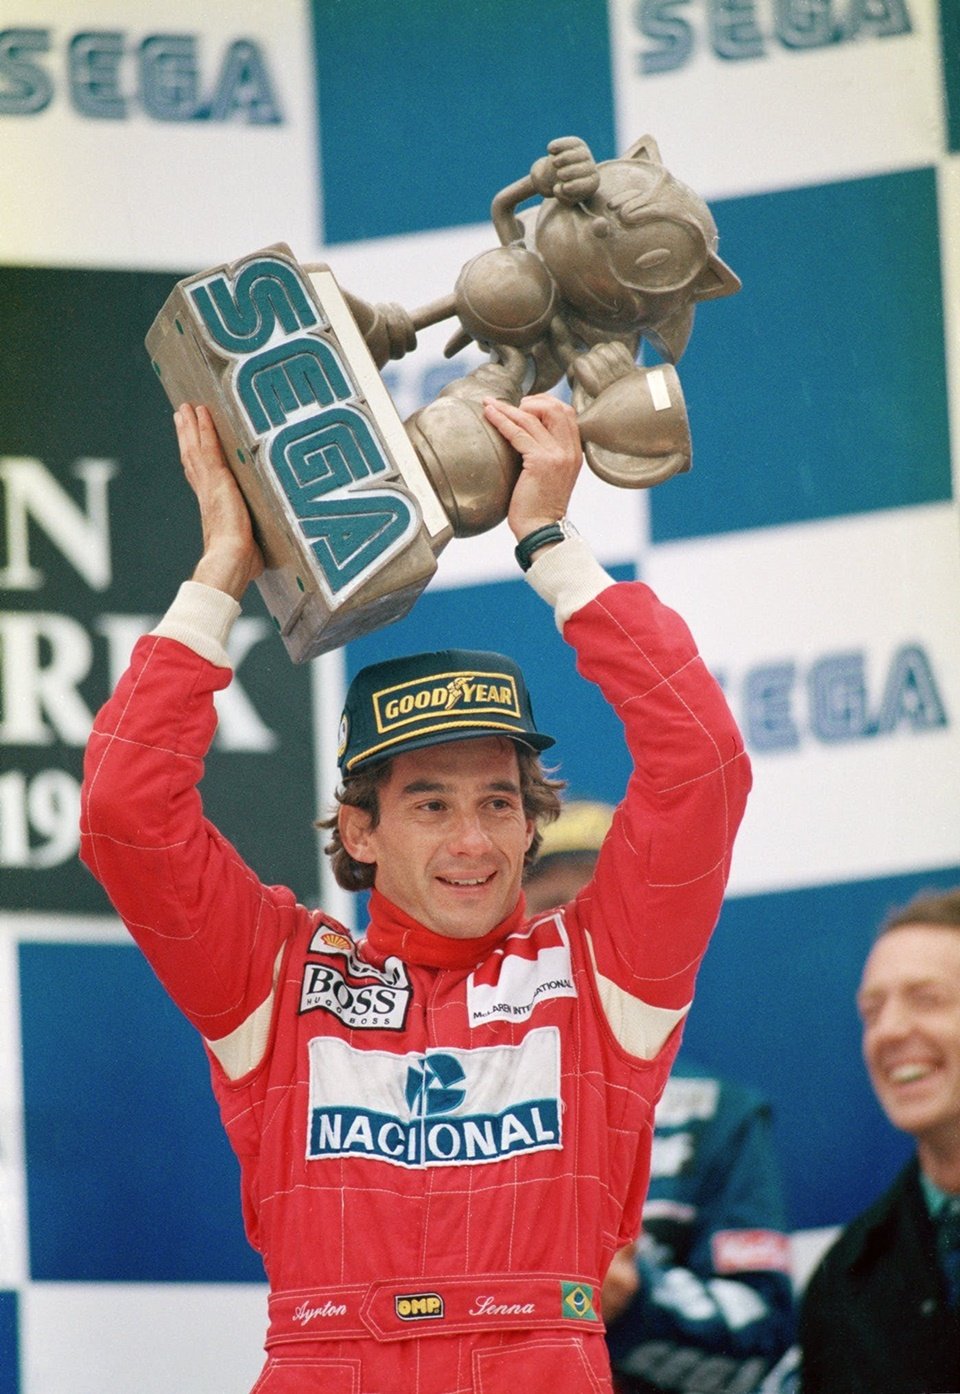 Senna e o troféu especial do Sonic, ganho em 1993 (Fonte: Tectoy/Reprodução)